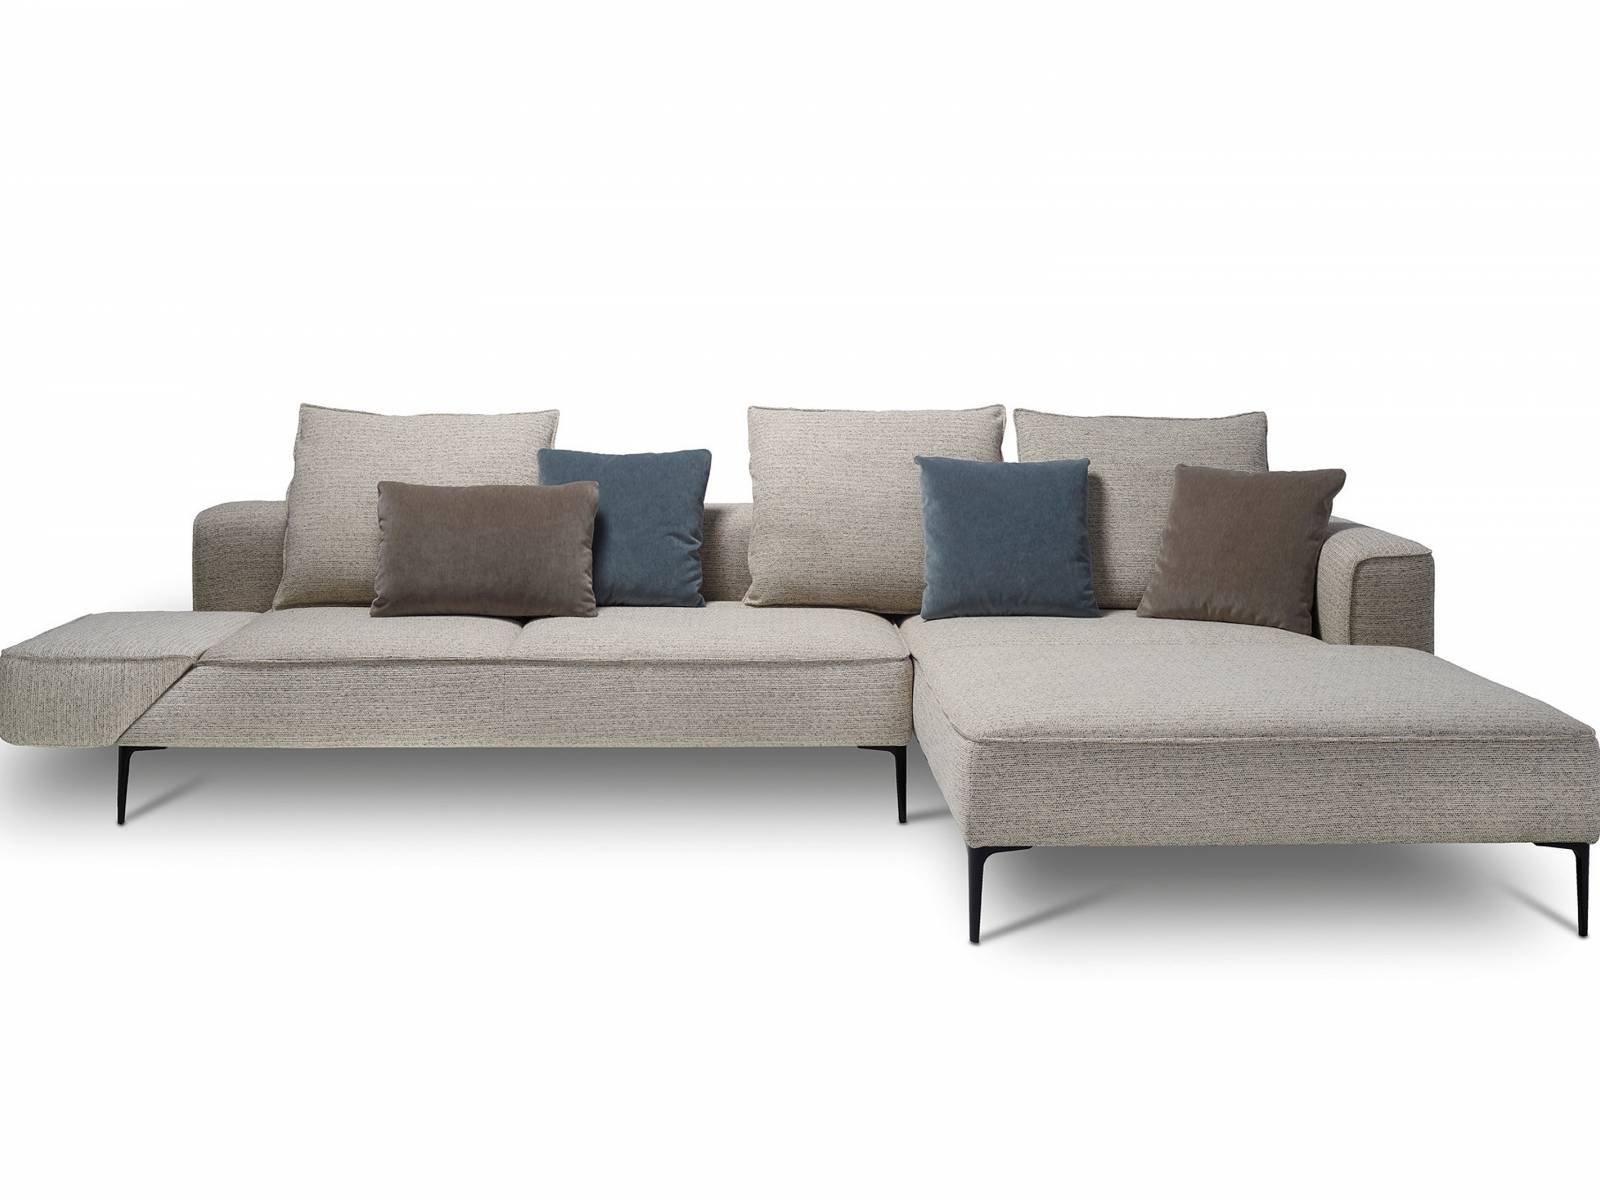 Das Sofa «Longueville» neu zu gestalten, war der Auftrag des belgischen Designstudios Verhaert New Products. Das Ergebnis ist ein Polstermöbel, das sich durch einen stilvollen und zugleich lässigen Look auszeichnet und dank klappbarer Armlehnen auch zum Schlafen ausreichend Platz bietet. Jori.